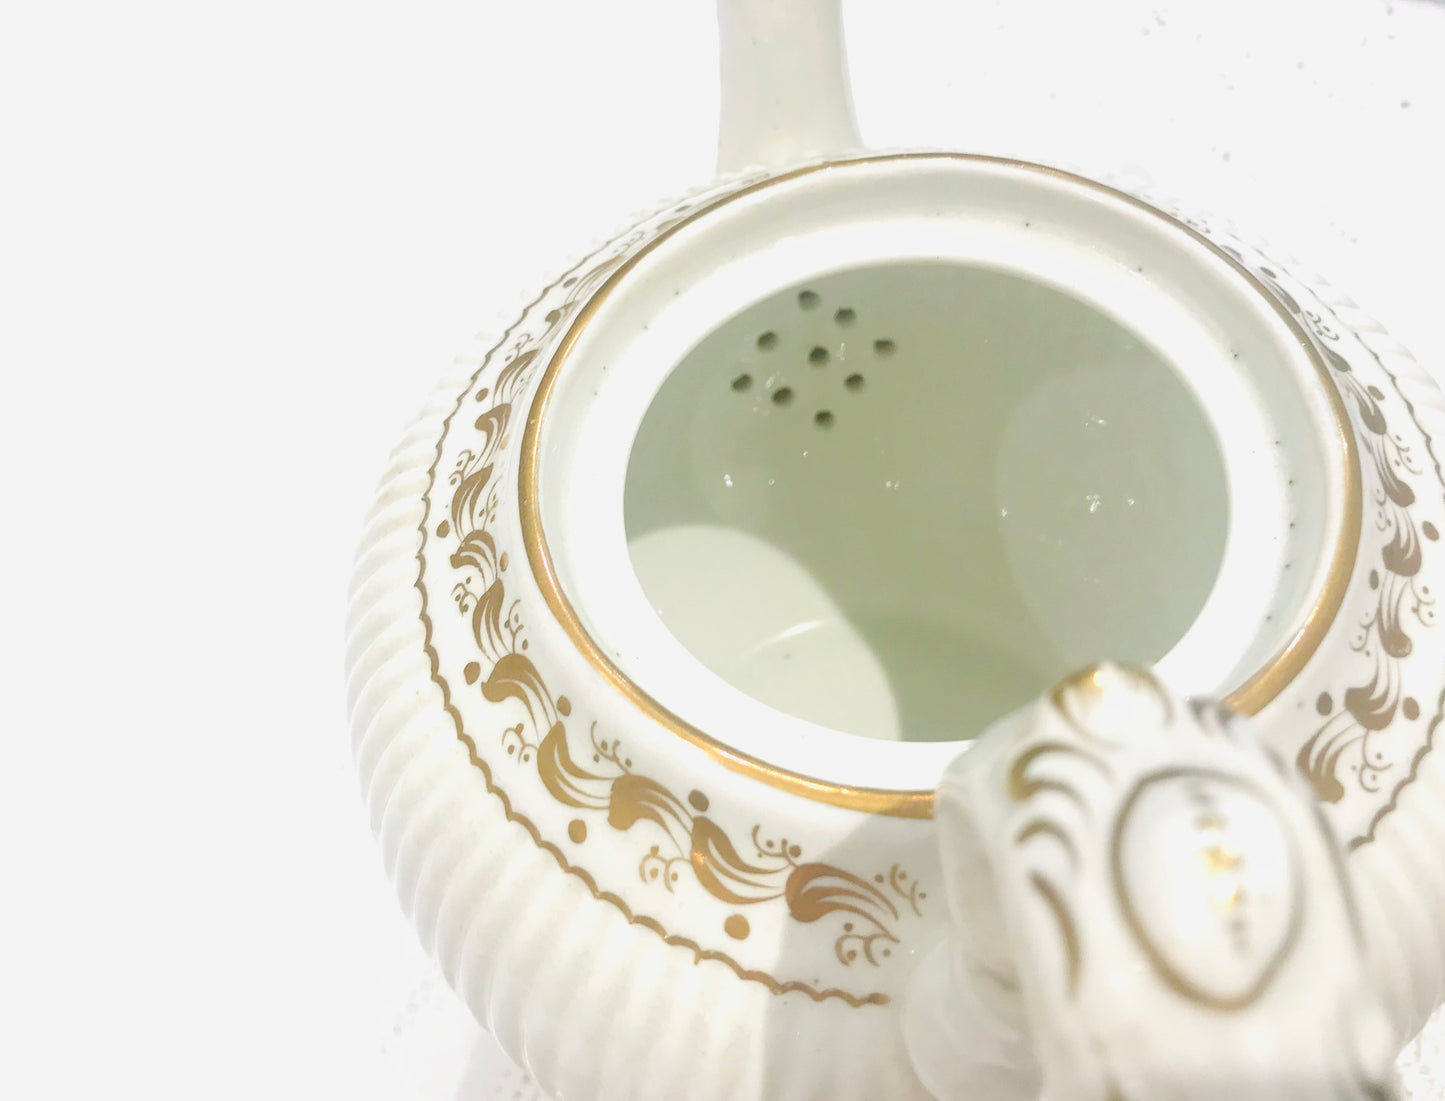 Antique “White & Gold Fleur de Leys” Tea set